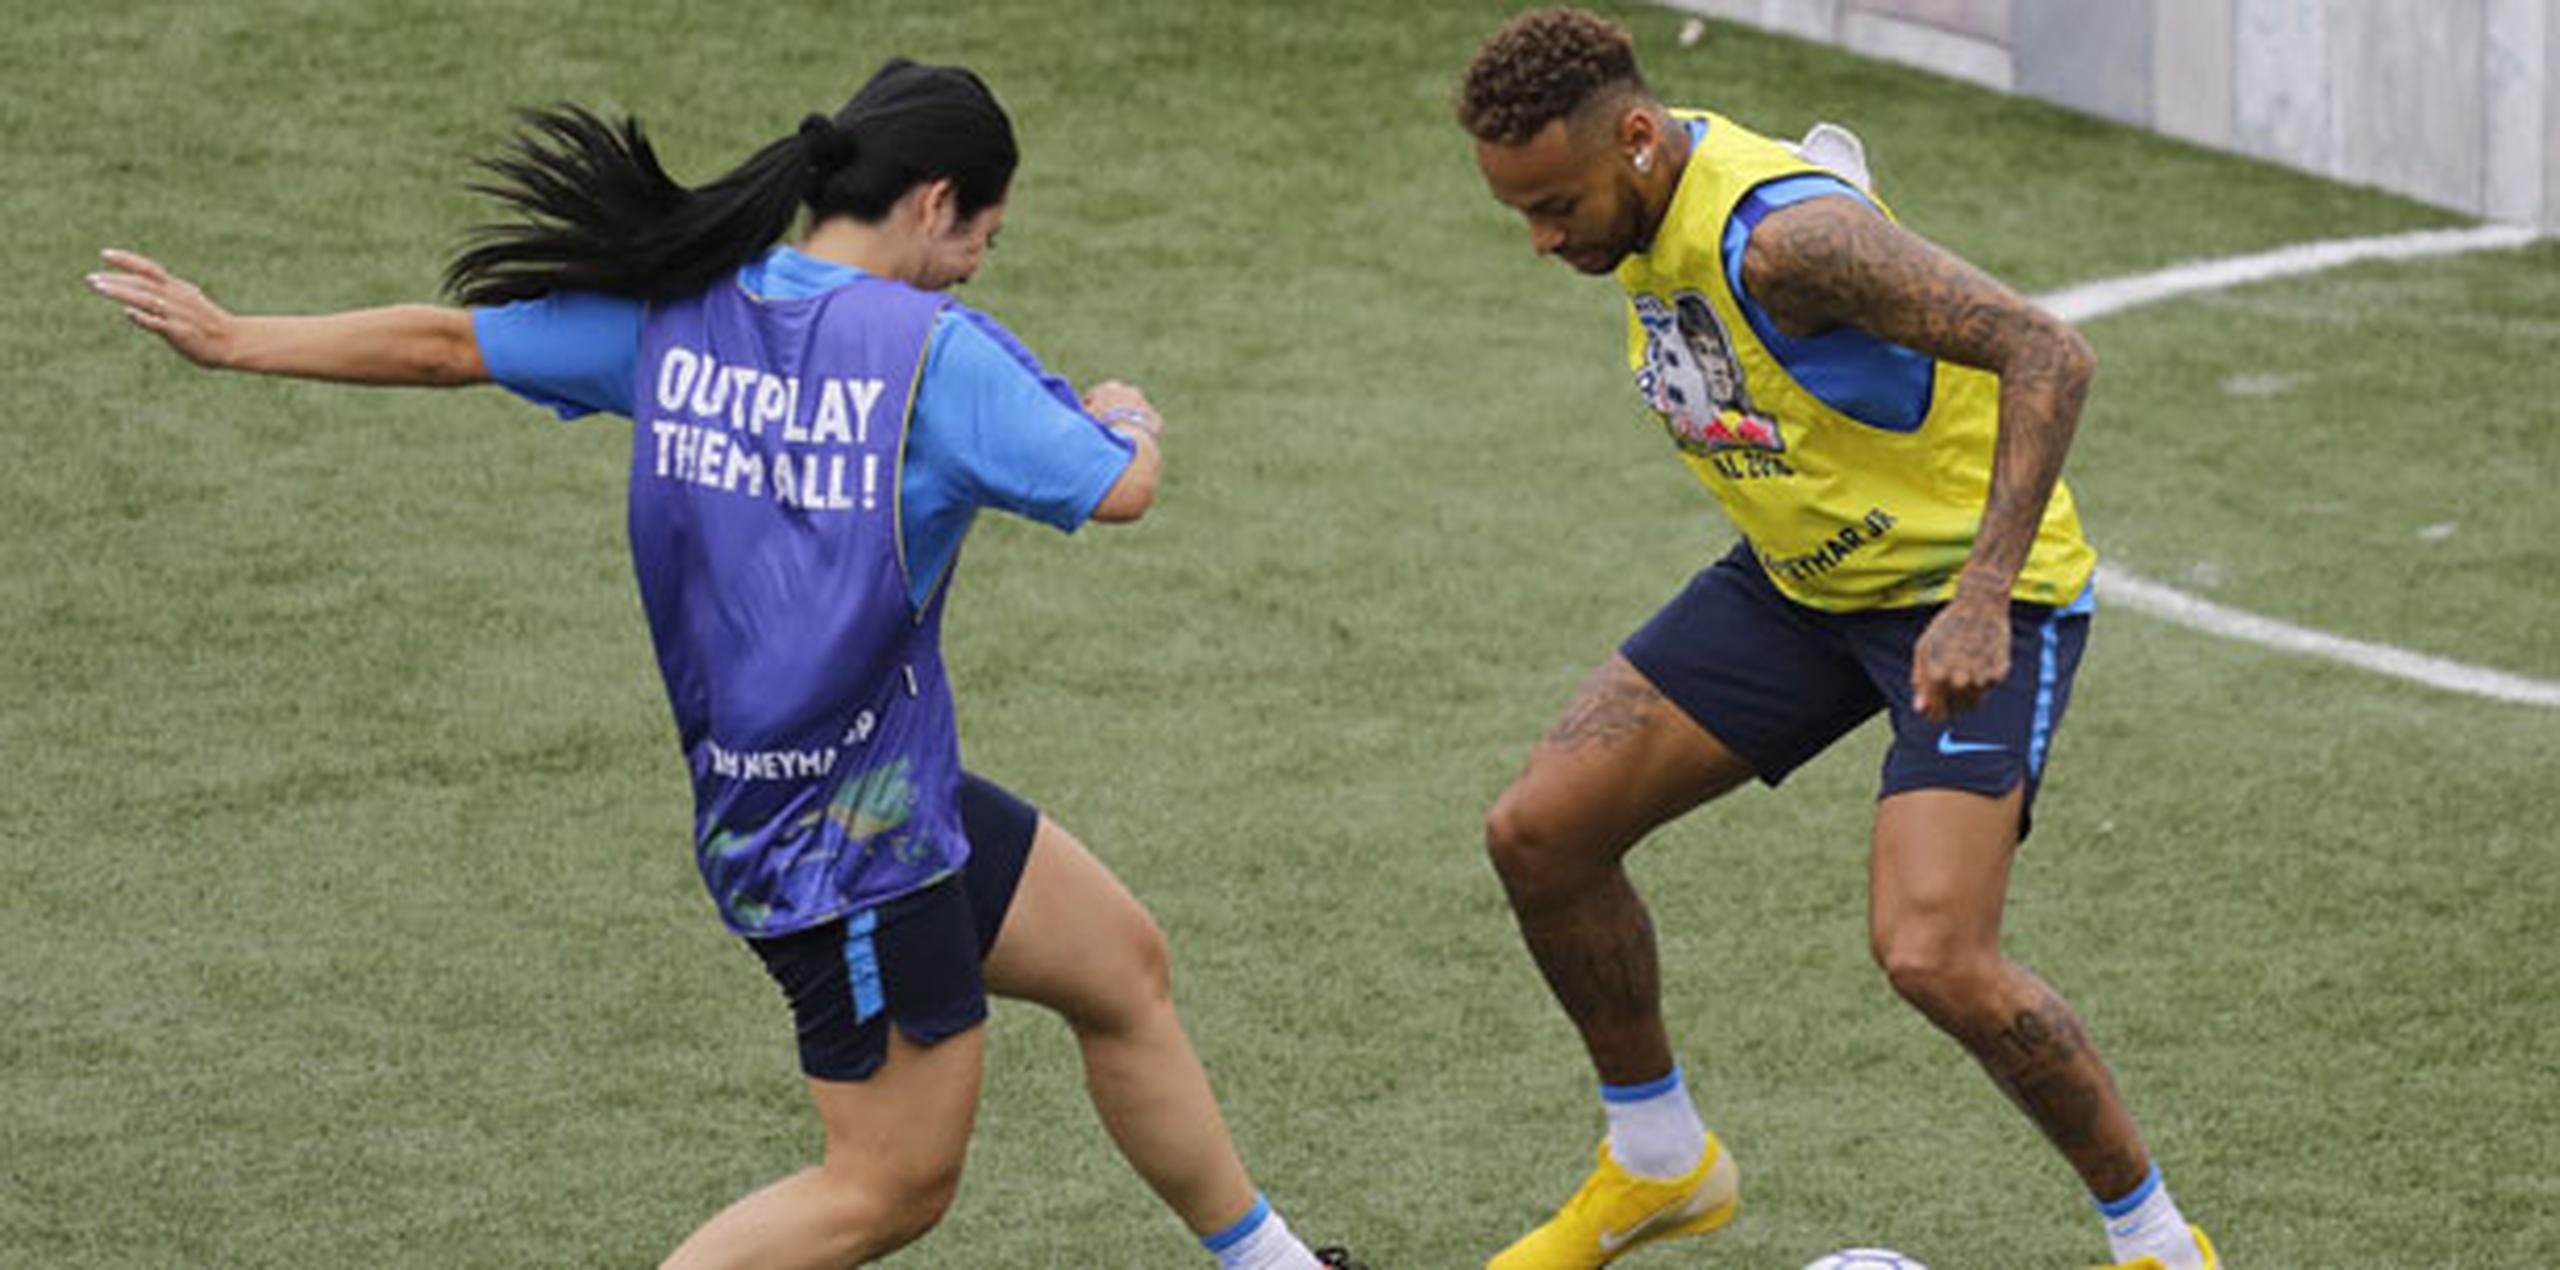 Neymar, blanco de críticas durante el Mundial por su tendencia a simular que le cometían faltas, negó sentirse afectado por los cuestionamientos. (AP)